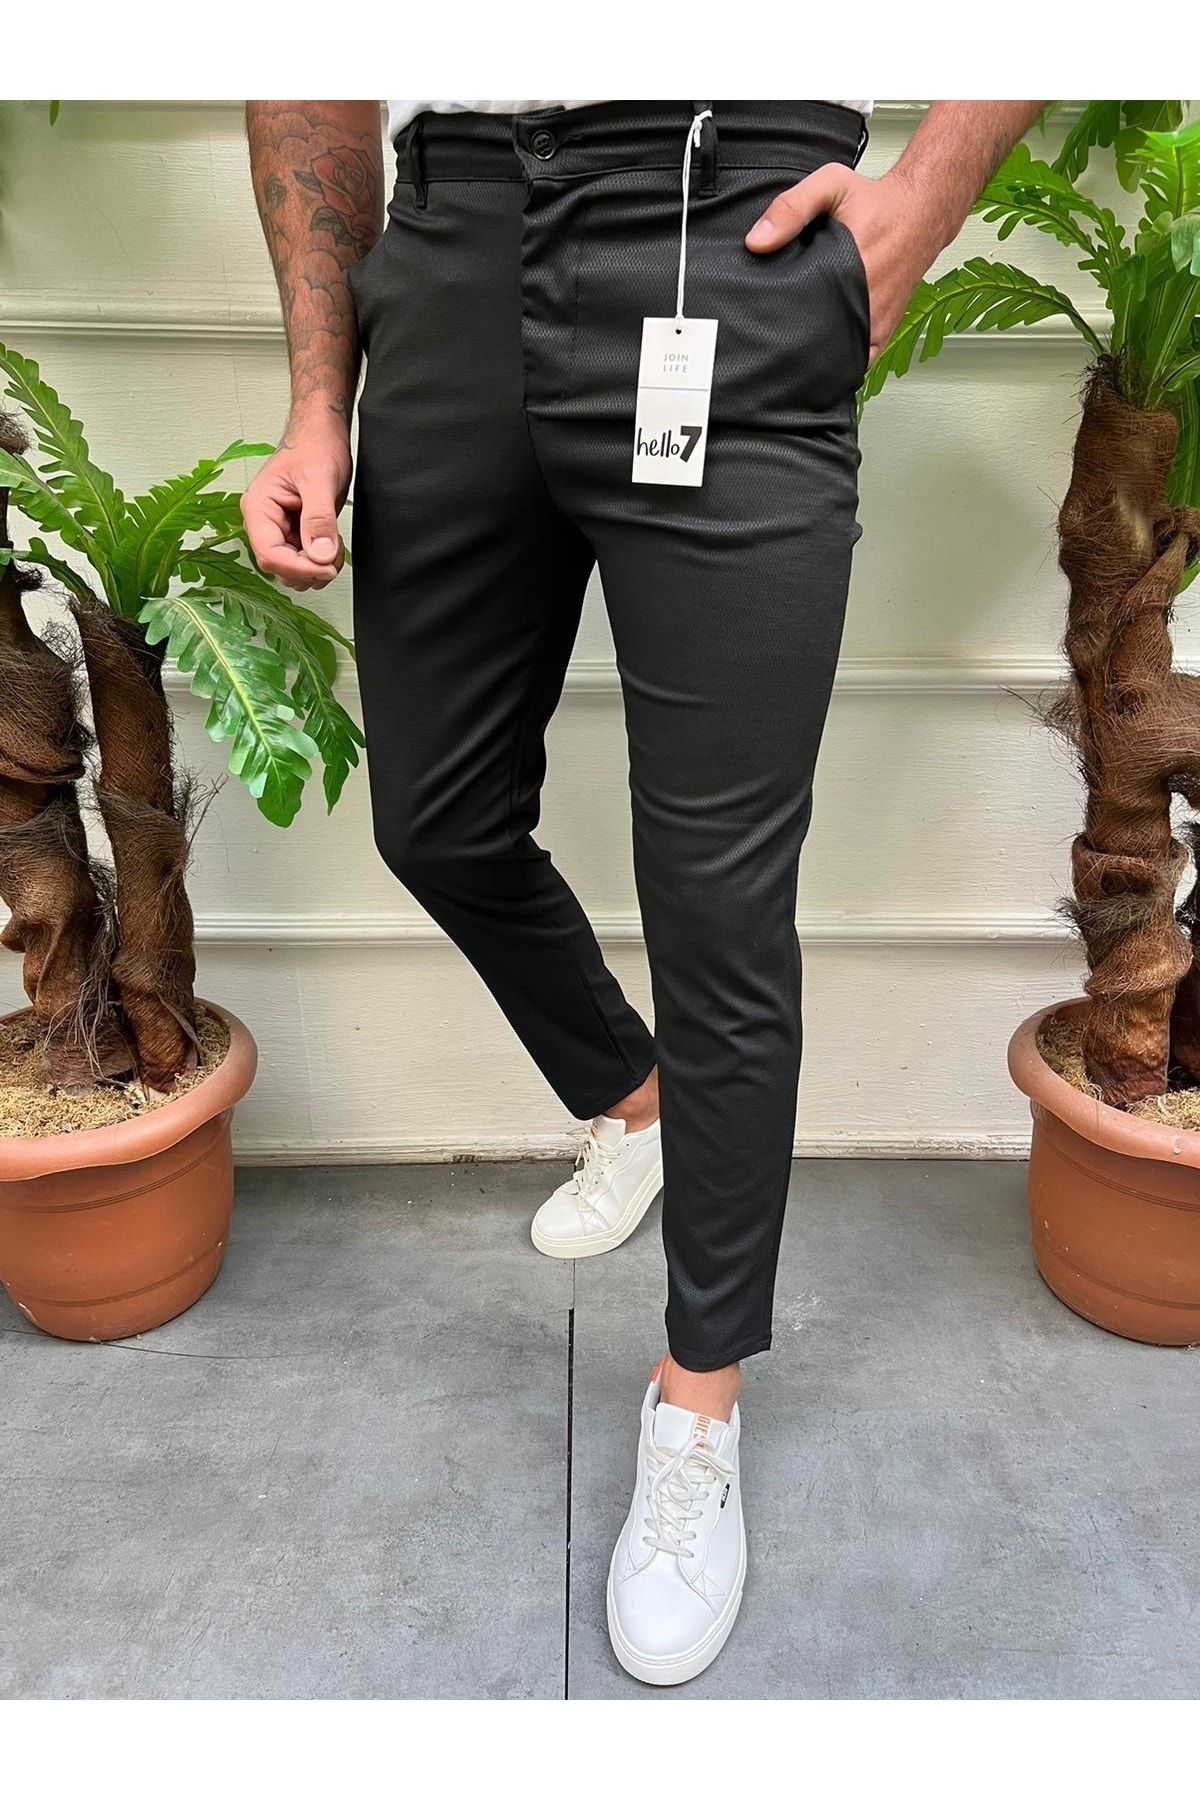 Regular Fit Linen-blend trousers - Dark brown - Men | H&M SG